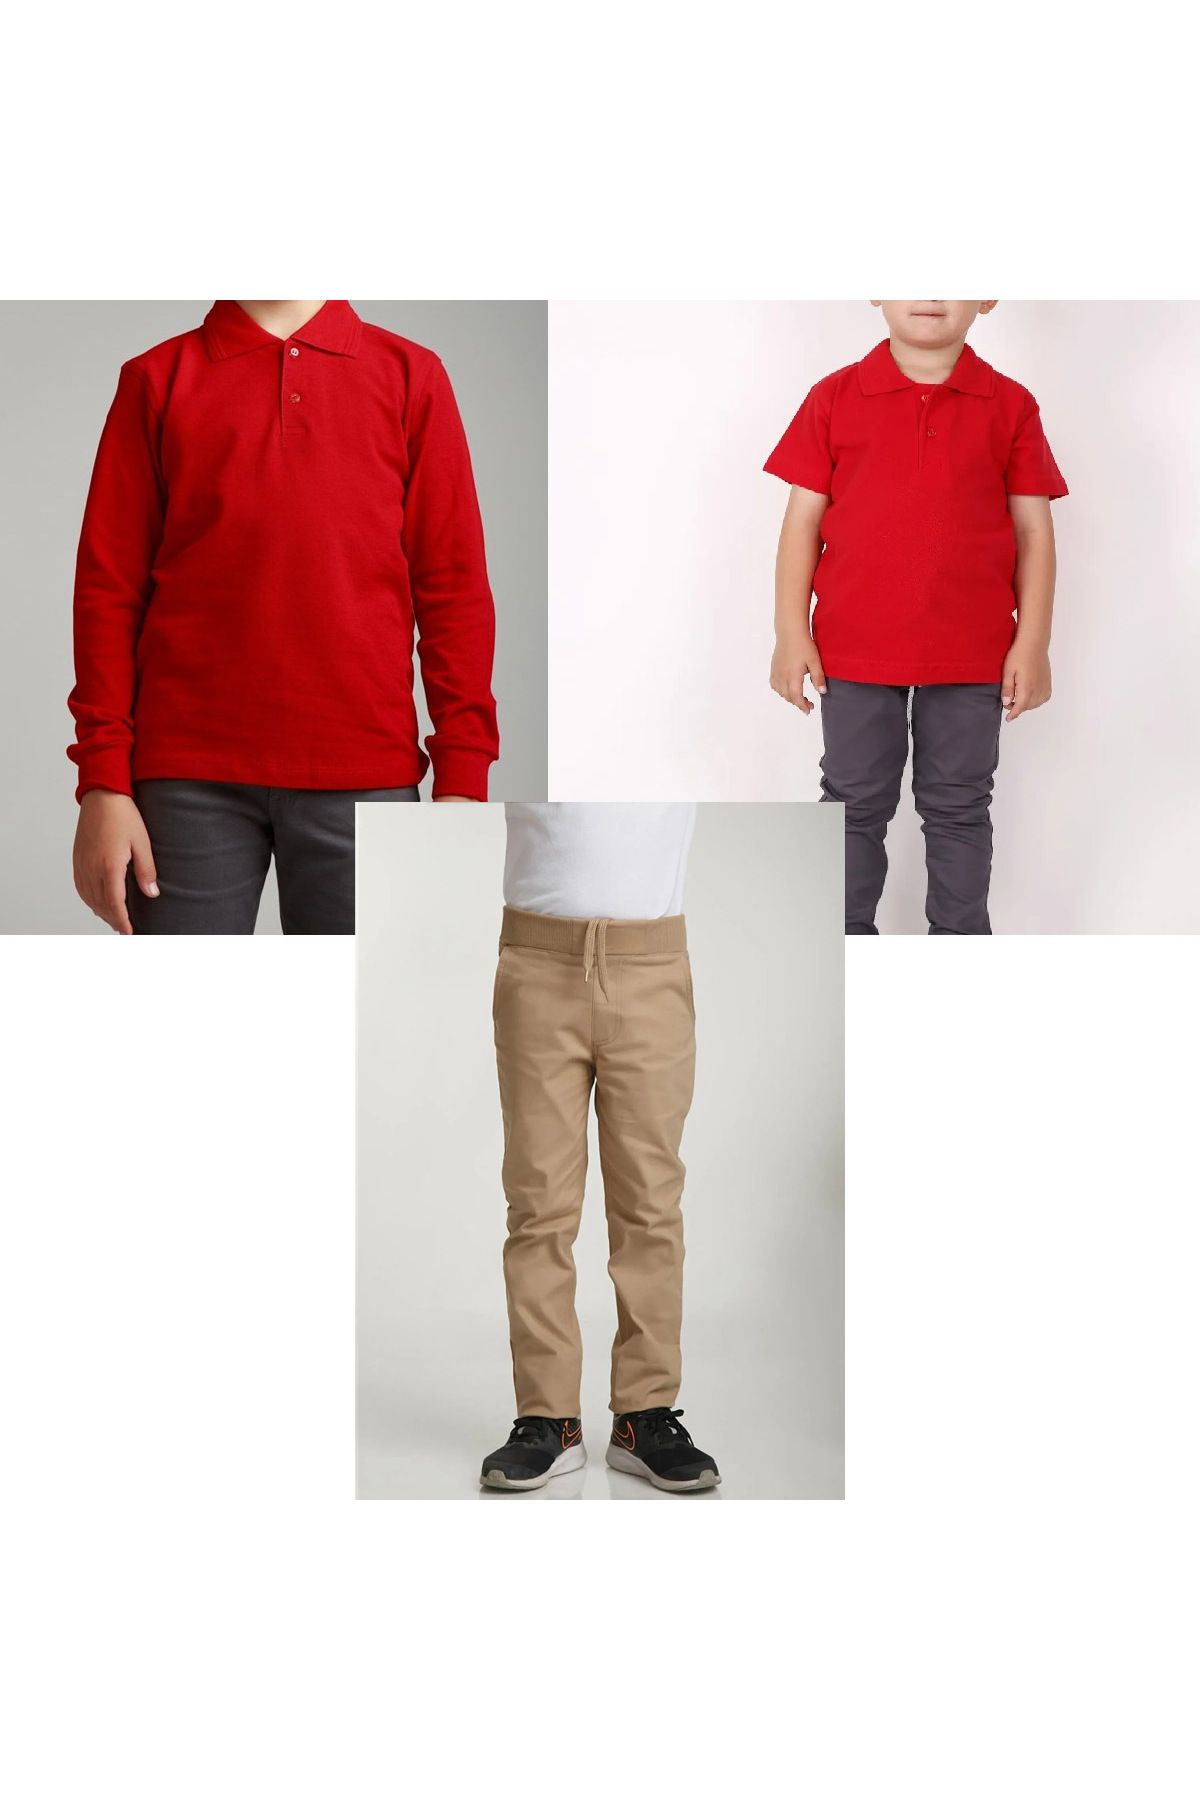 FATELLA Unisex çocuk okul ribana bel pantolon - kırmızı kısa kol uzun kol Polo yaka tişört 3lü takım